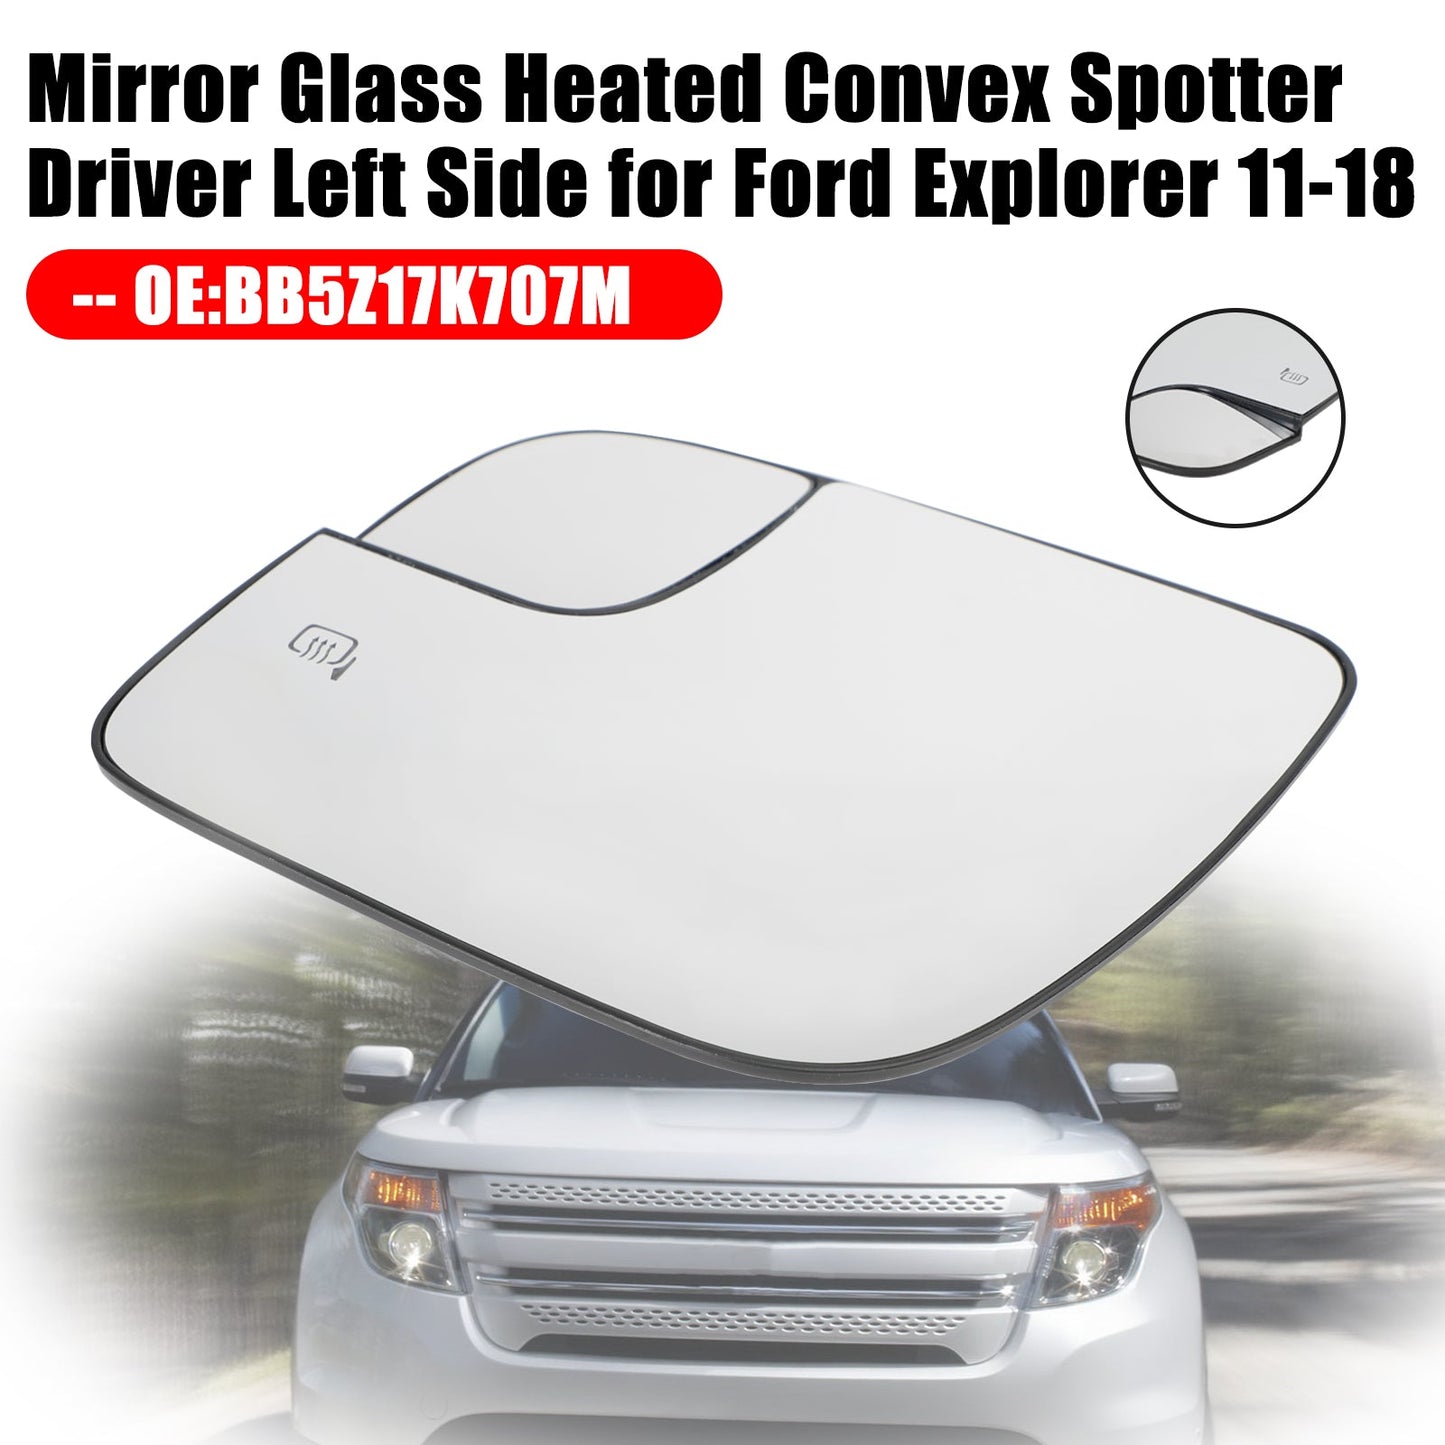 2011-2018 Ford Explorer Miroir chauffant Verre Convex Spotter Conducteur Côté gauche